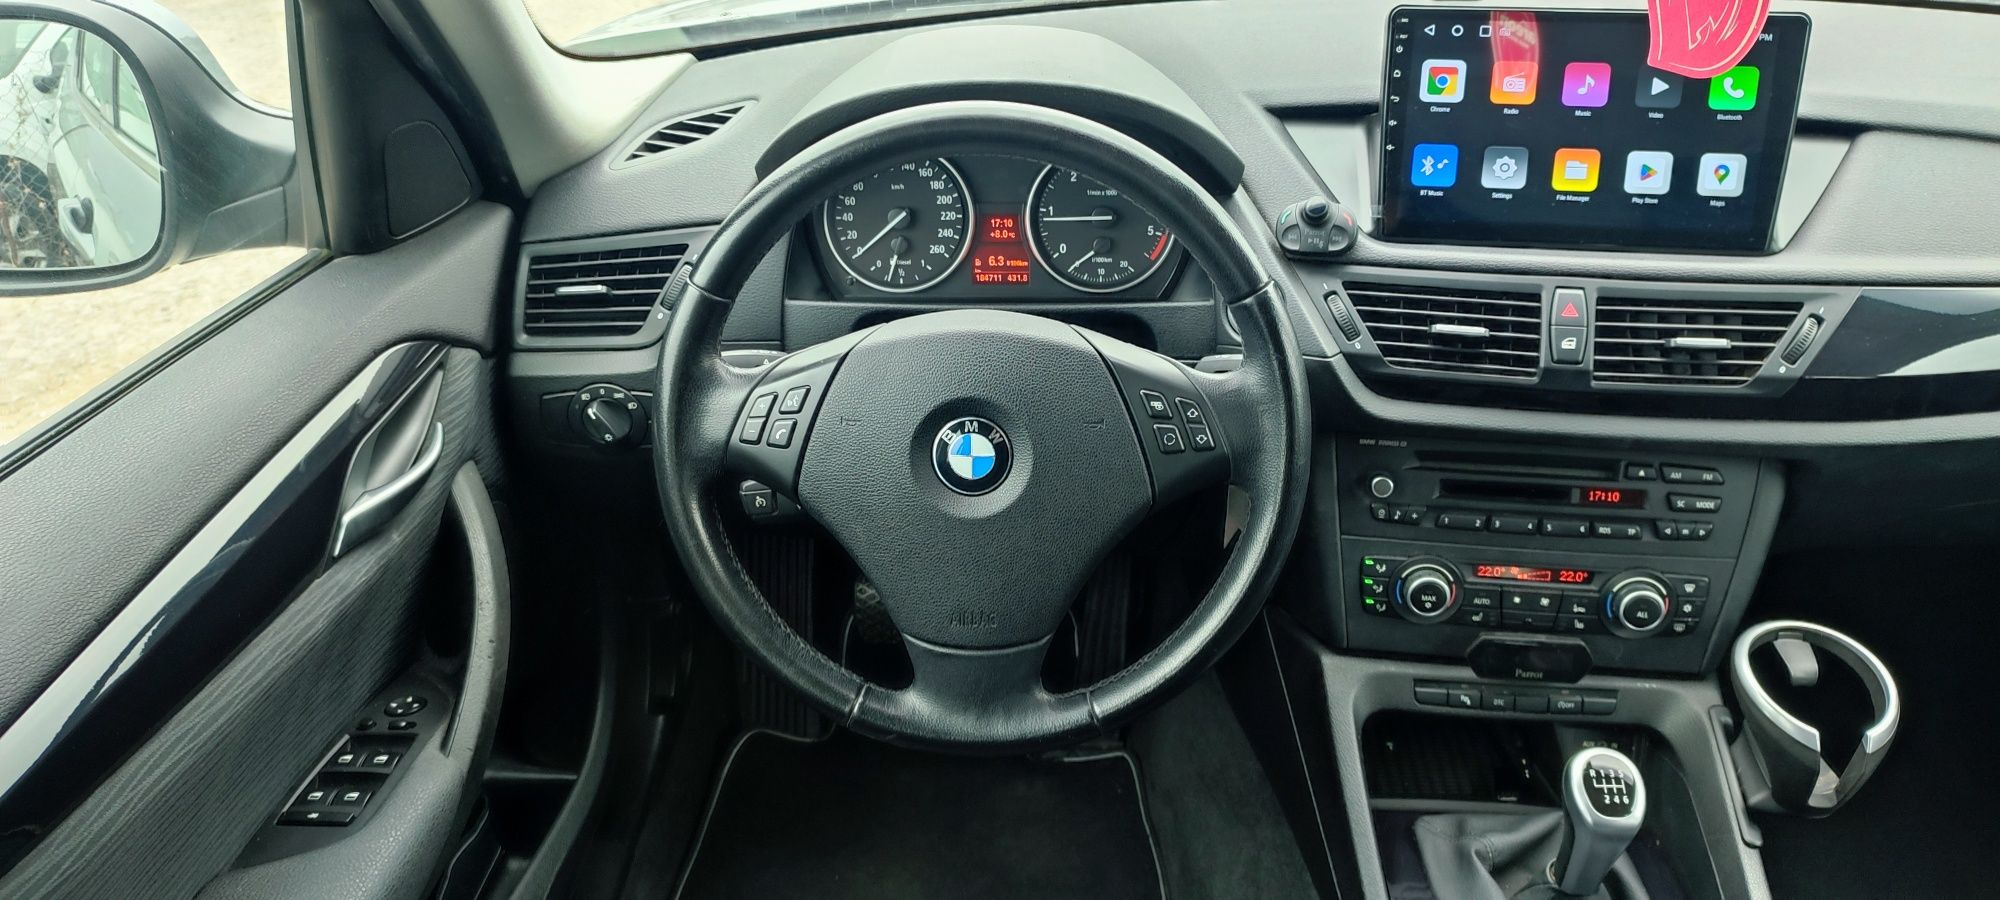 BMW X1 2.0 diesel Euro5